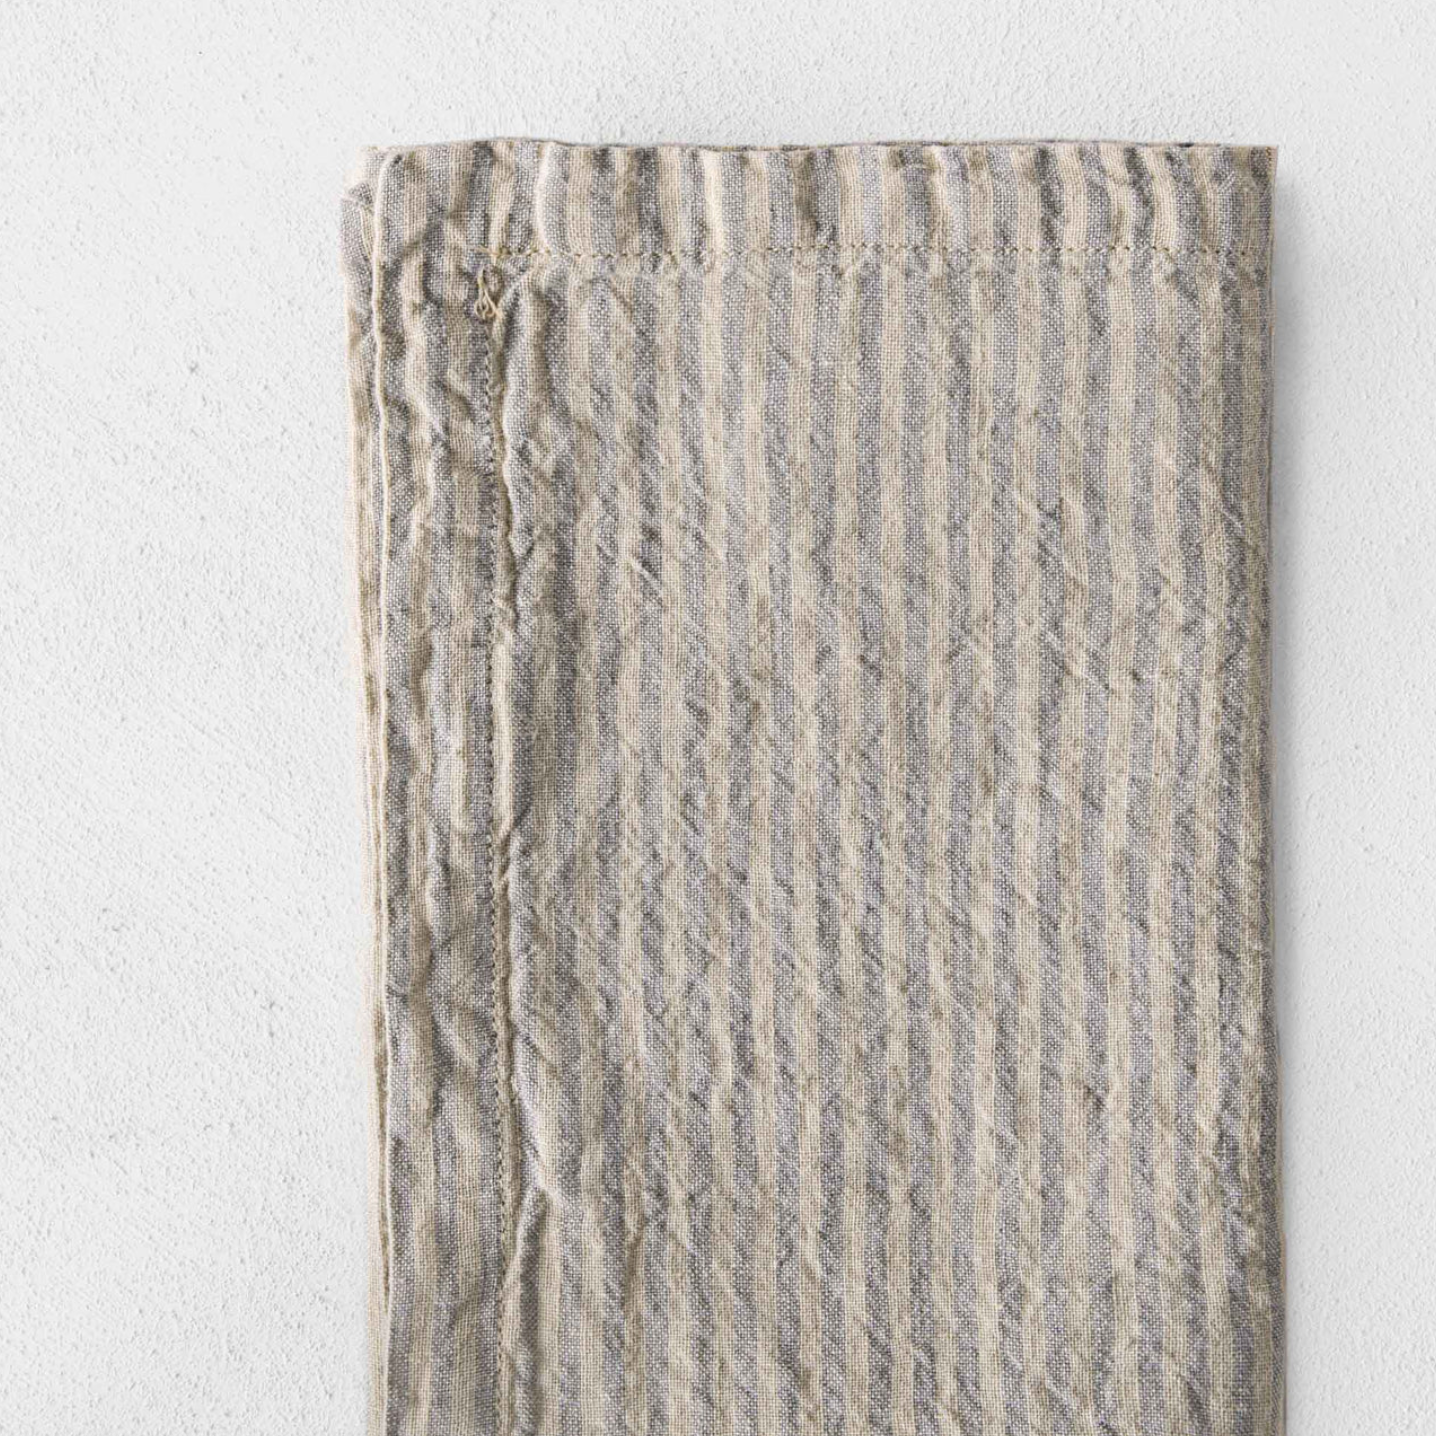 Basix Striped Linen Napkin